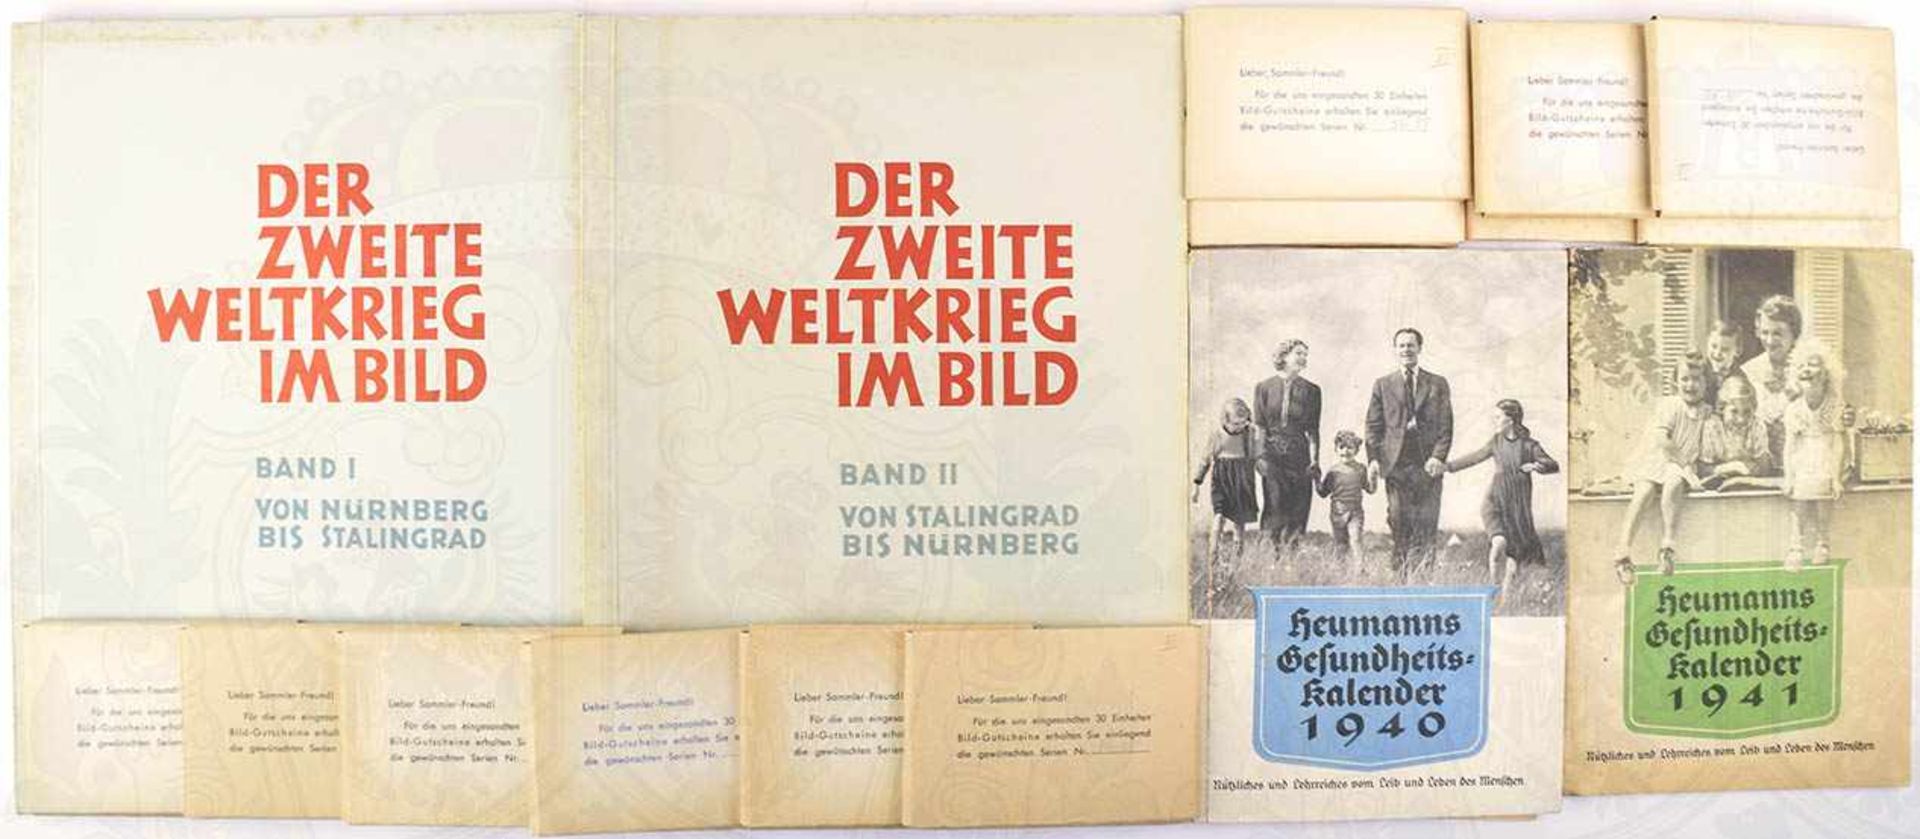 DER 2. WELTKRIEG IM BILD, Eilebrecht 1952, Bde. 1 u. 2 kpl. m. Bildtafeln, die 360 Bilder kpl. in 12